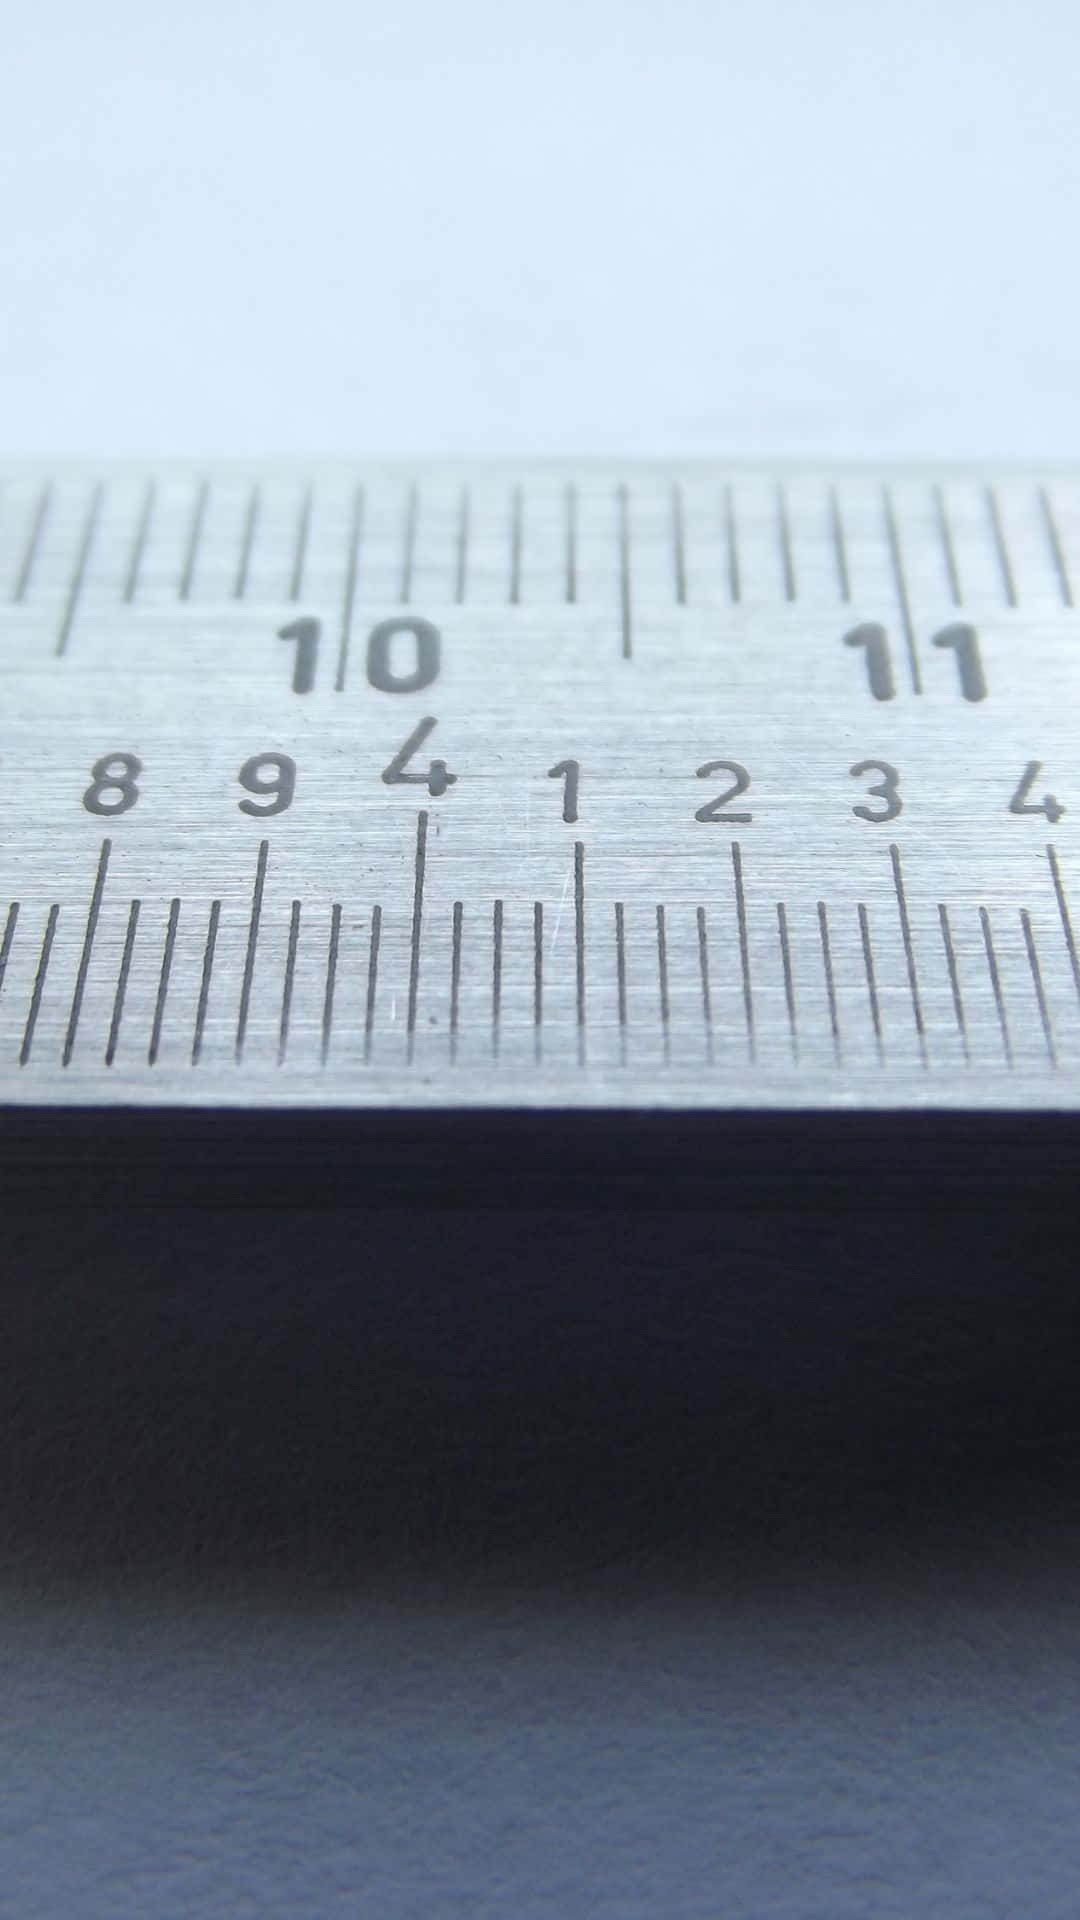 Precision Measurement Tool Macro Wallpaper